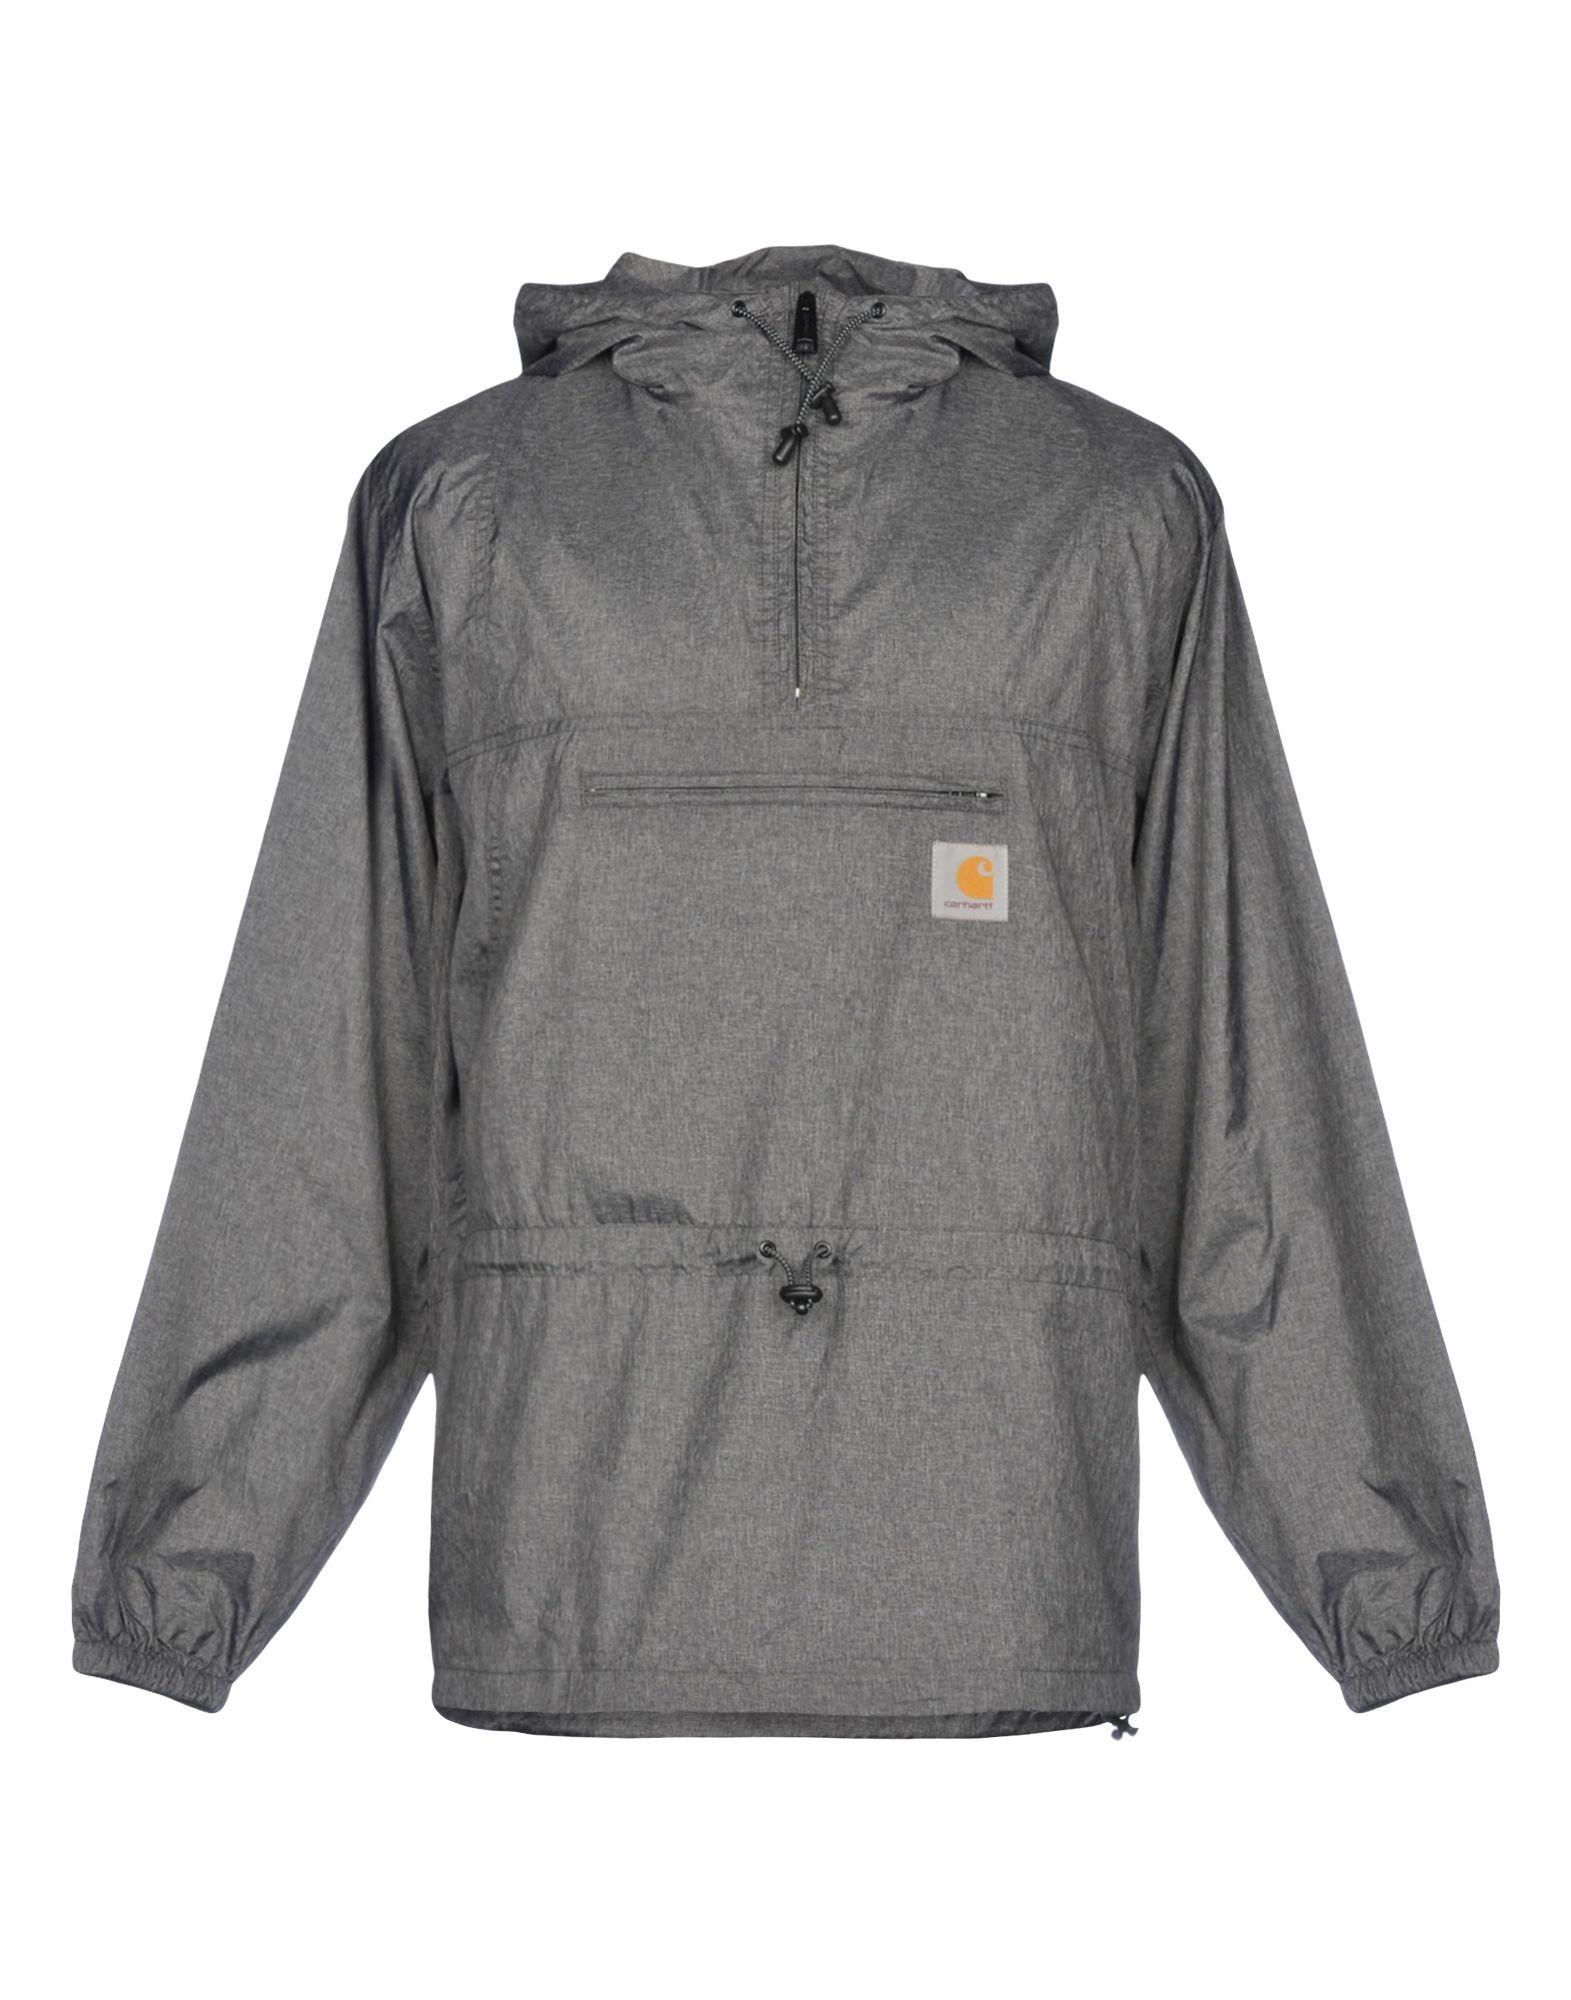 Carhartt Jacket in Lead (Gray) for Men - Lyst